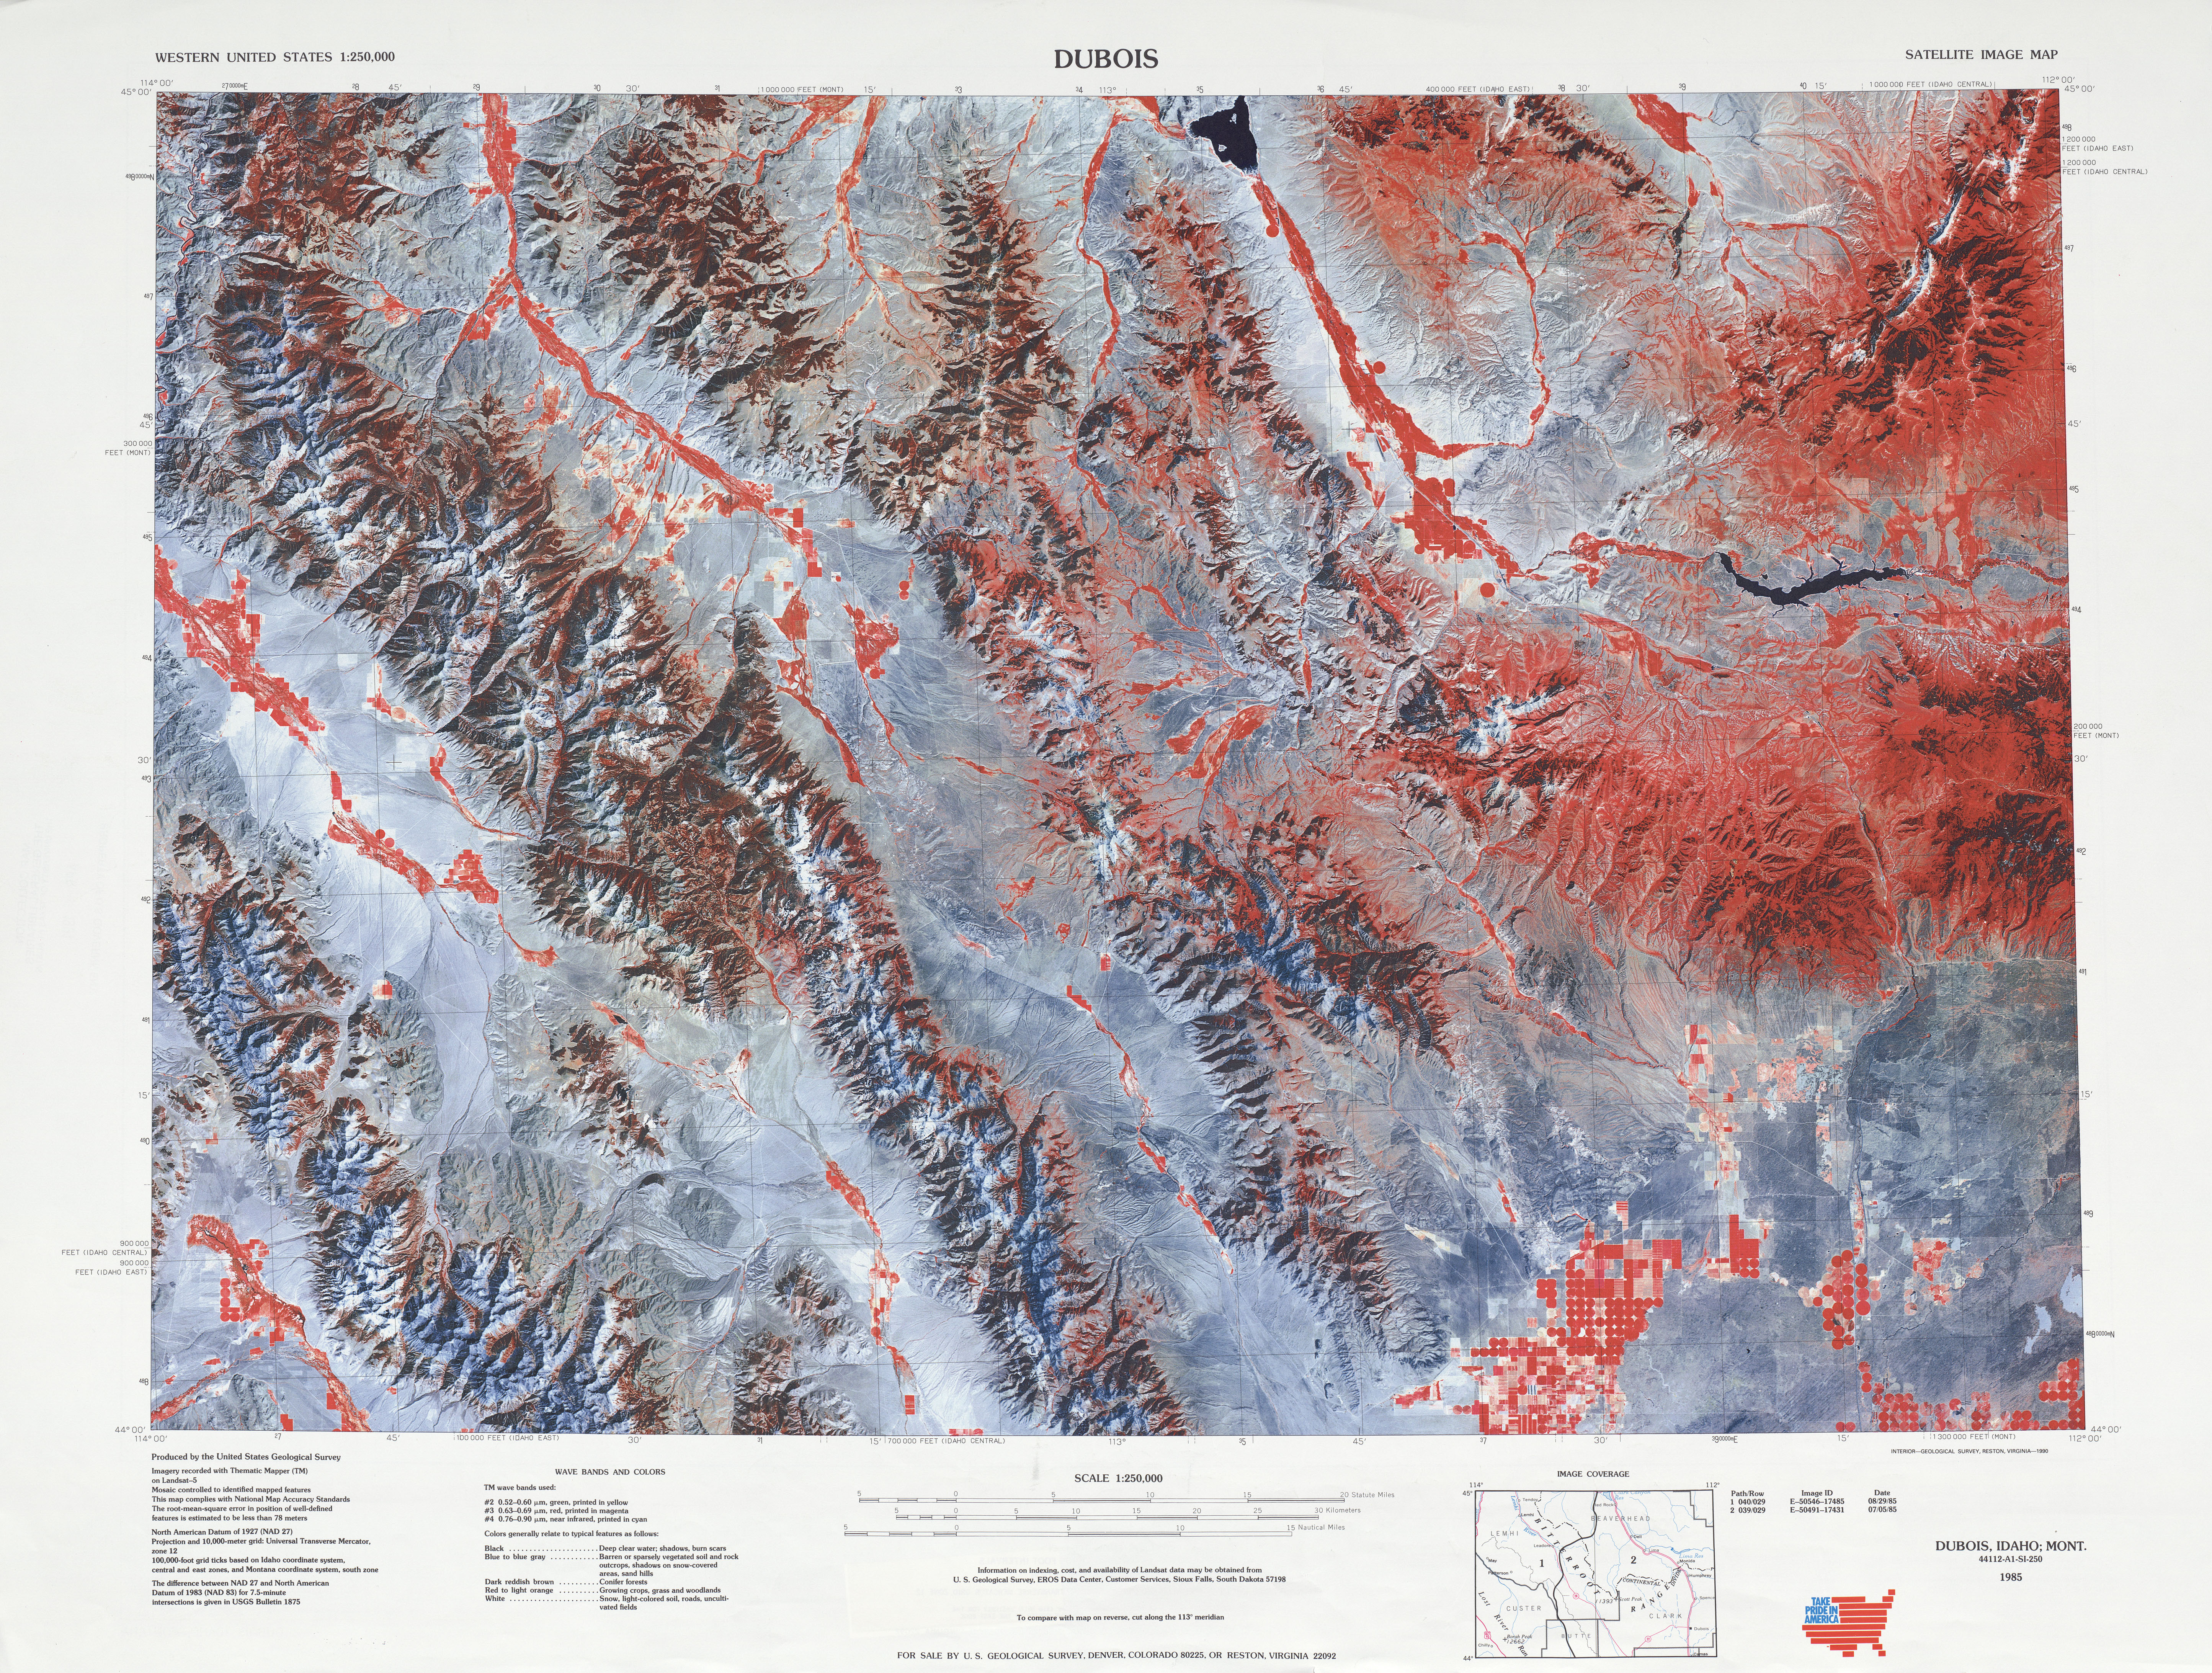 Hoja Dubois de la Imagen Satelital de los Estados Unidos 1985